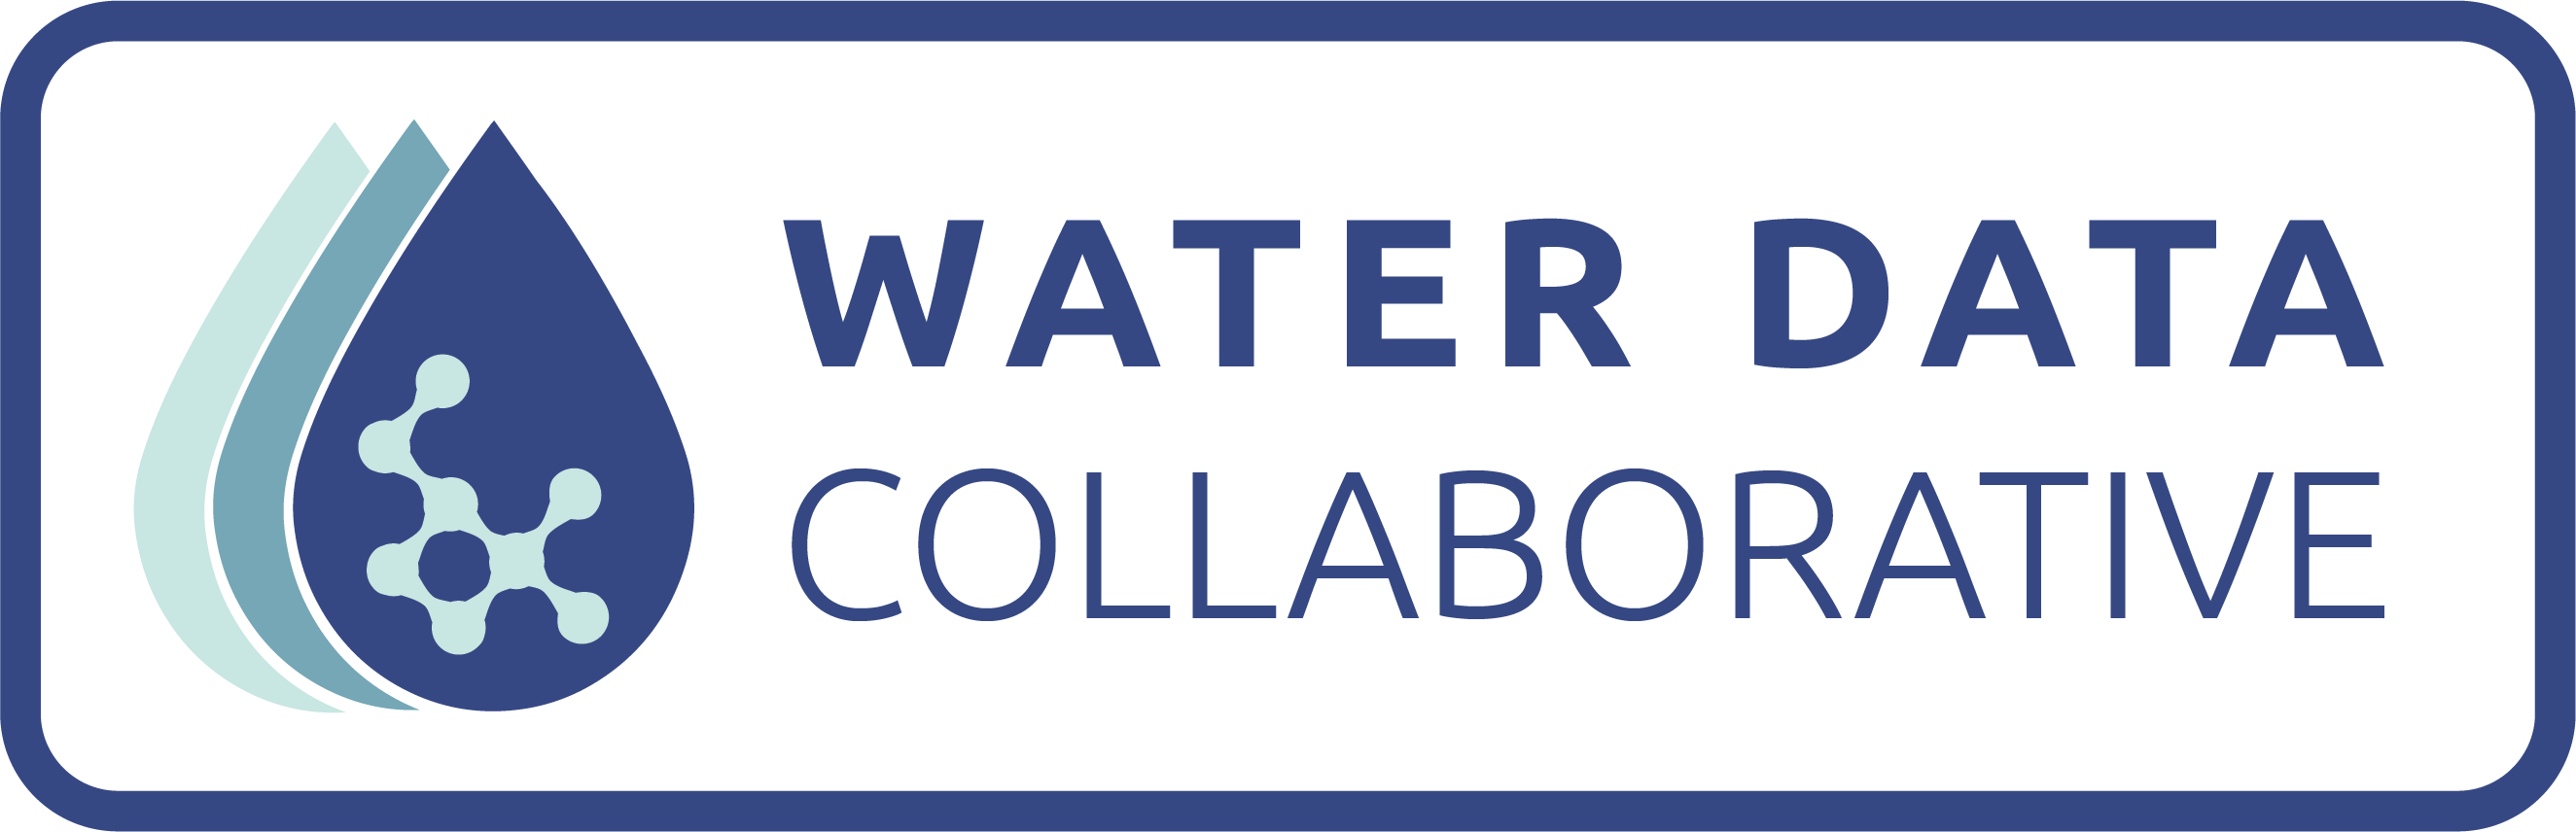 Water Data Collaborative Logo